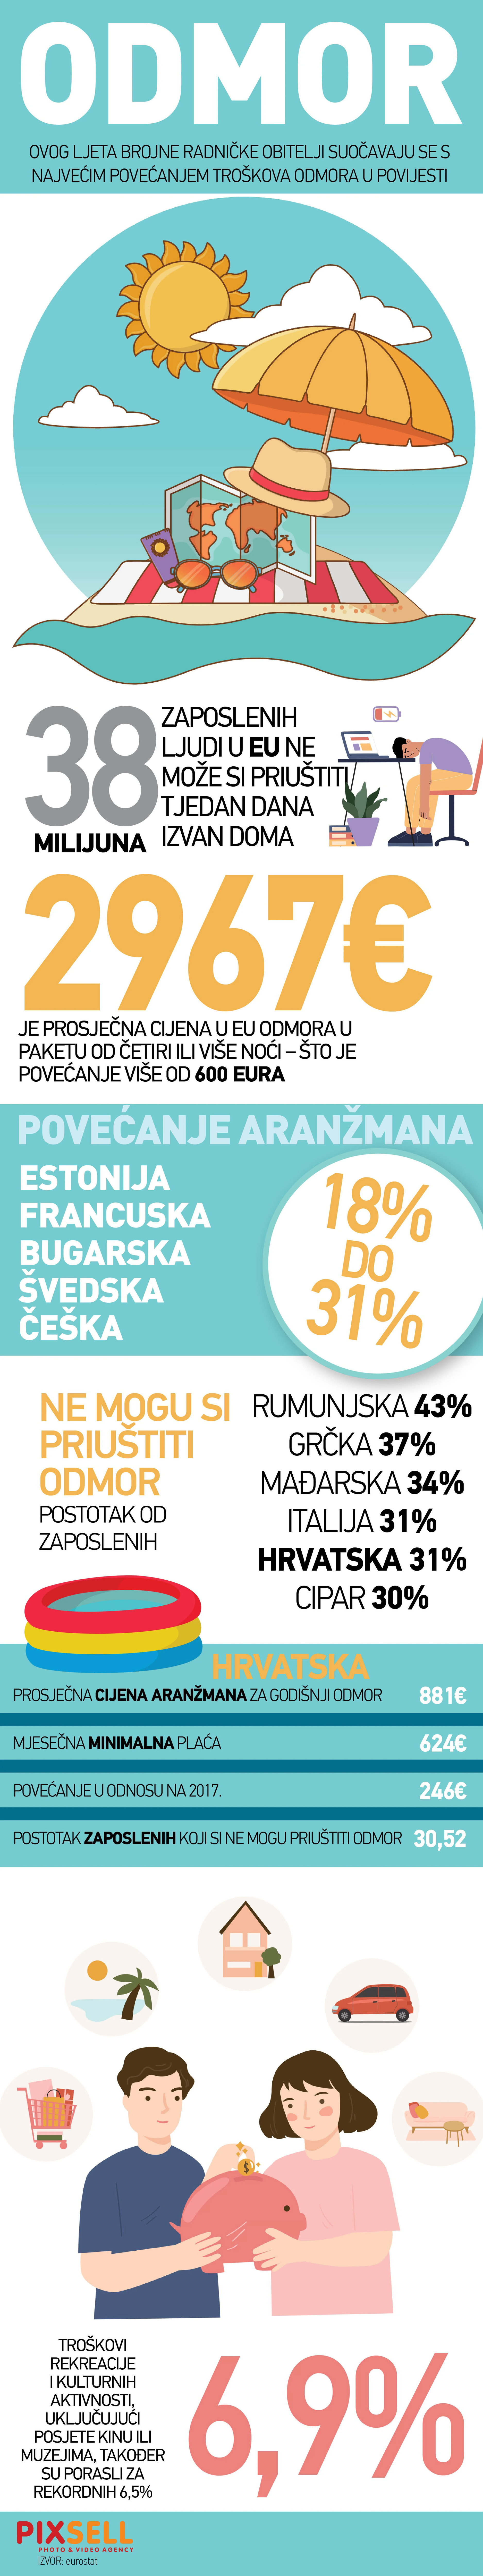 Infografika: Svaki treći radnik u Hrvatskoj ne može si priuštiti odlazak na odmor 